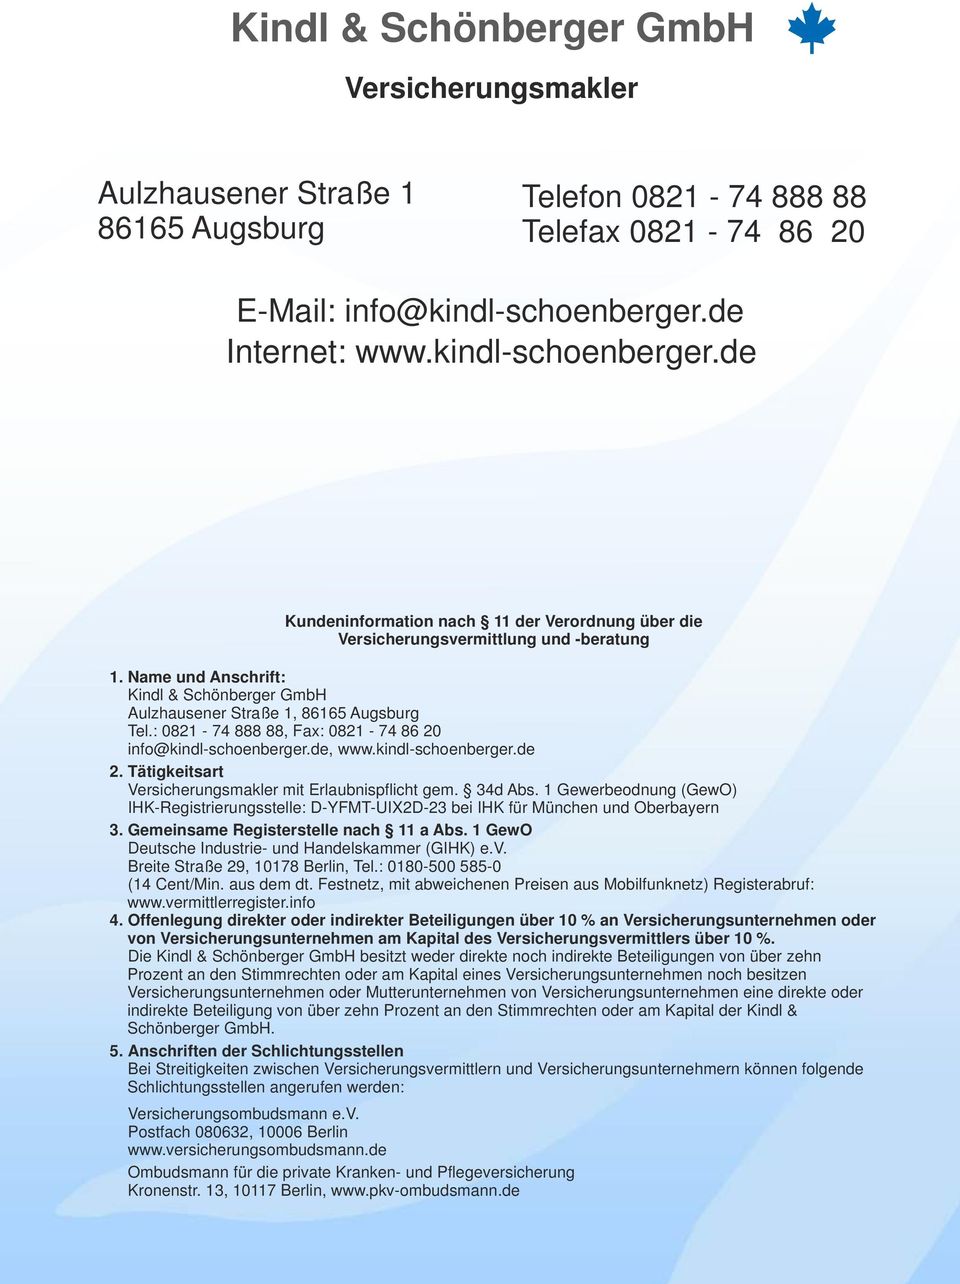 Name und Anschrift: Kindl & Schönberger GmbH Aulzhausener Straße 1, 86165 Augsburg Tel.: 0821-74 888 88, Fax: 0821-74 86 20 info@kindl-schoenberger.de, www.kindl-schoenberger.de 2.